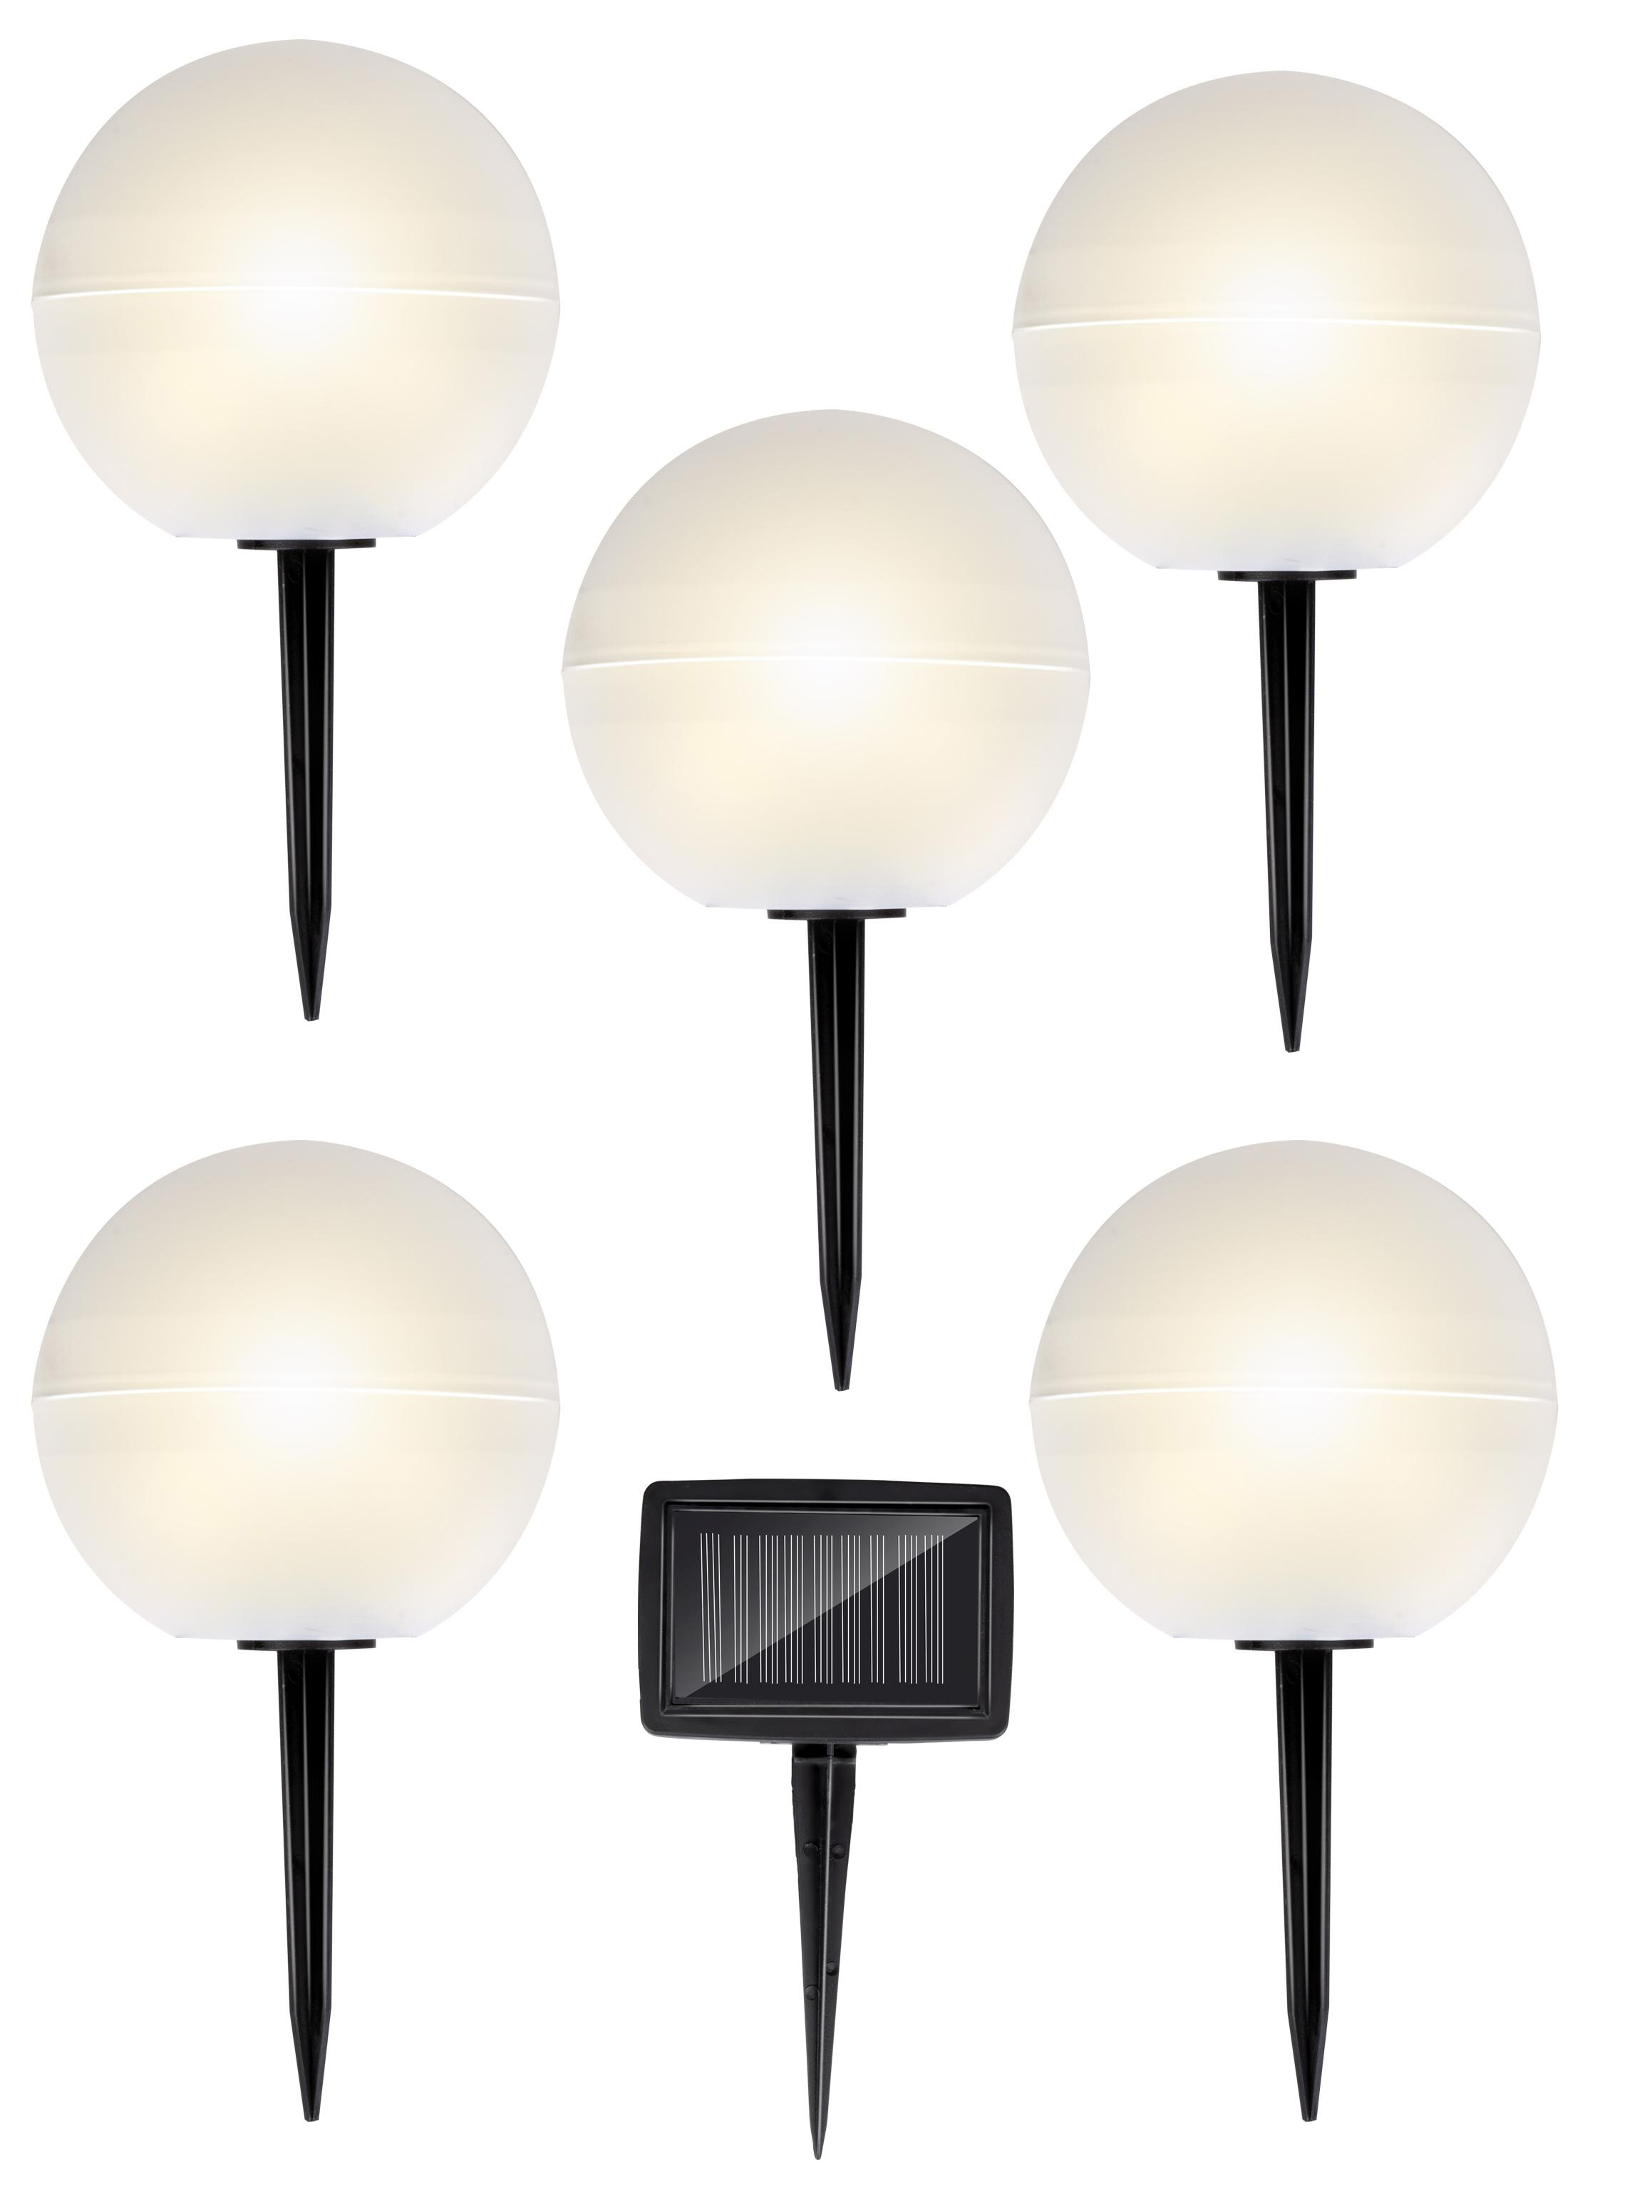 LED GRUNDIG Weiß, Set Warmweiß/Farbwechsel 5er Bodenleuchten, Solar